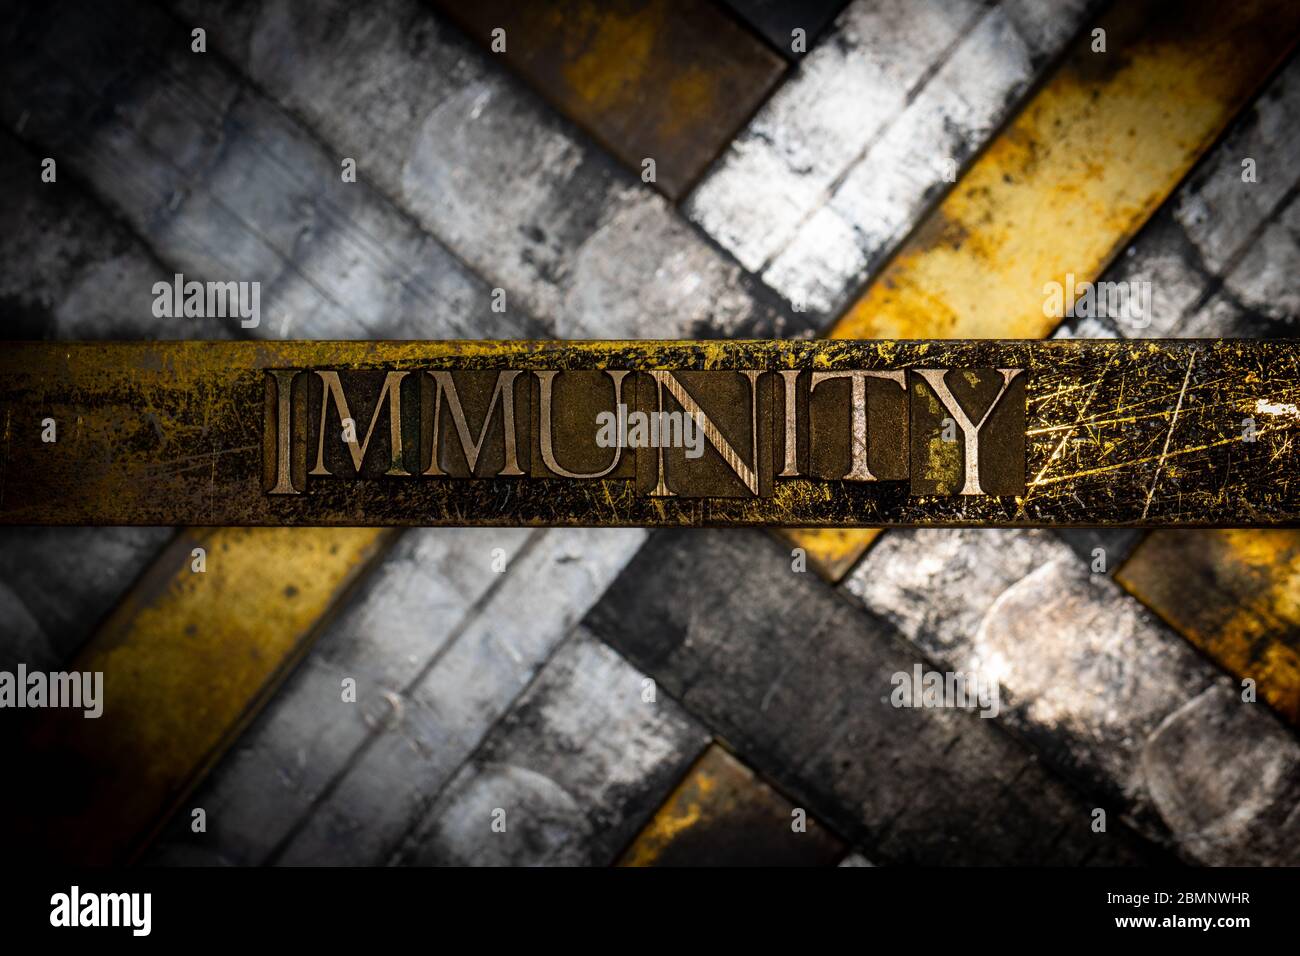 Foto von echten authentischen Schreibschrift bilden Immunity Text auf vintage texturierten Grunge Kupfer und schwarzem Hintergrund Stockfoto